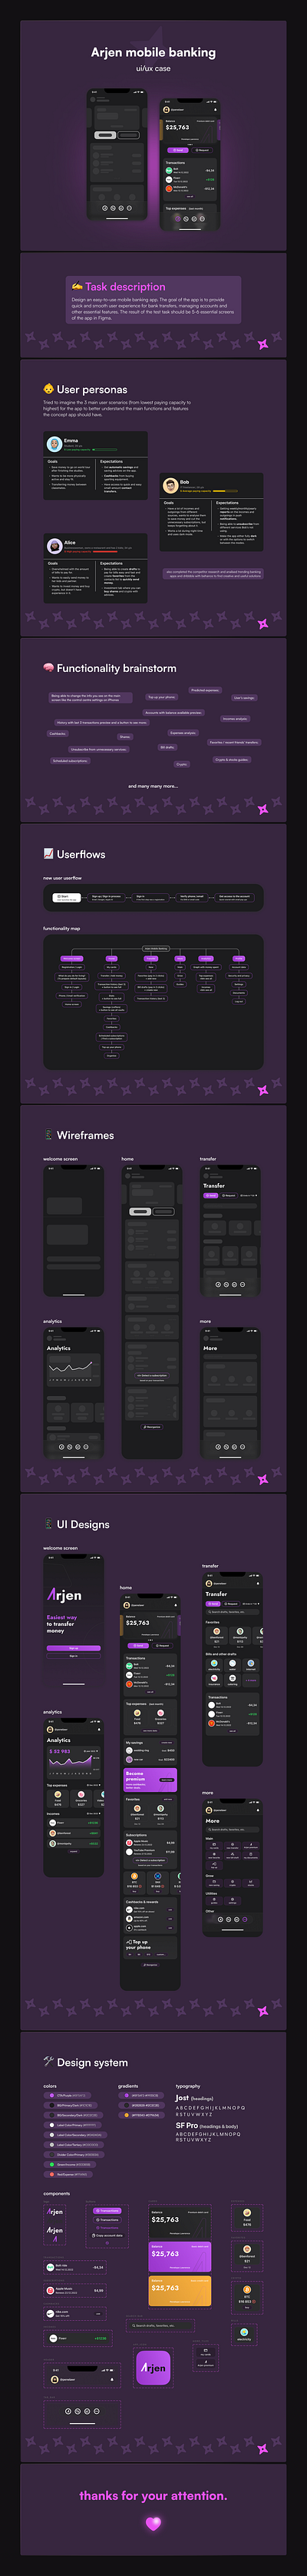 mobile banking app app concept design design system figma mobile ui ux